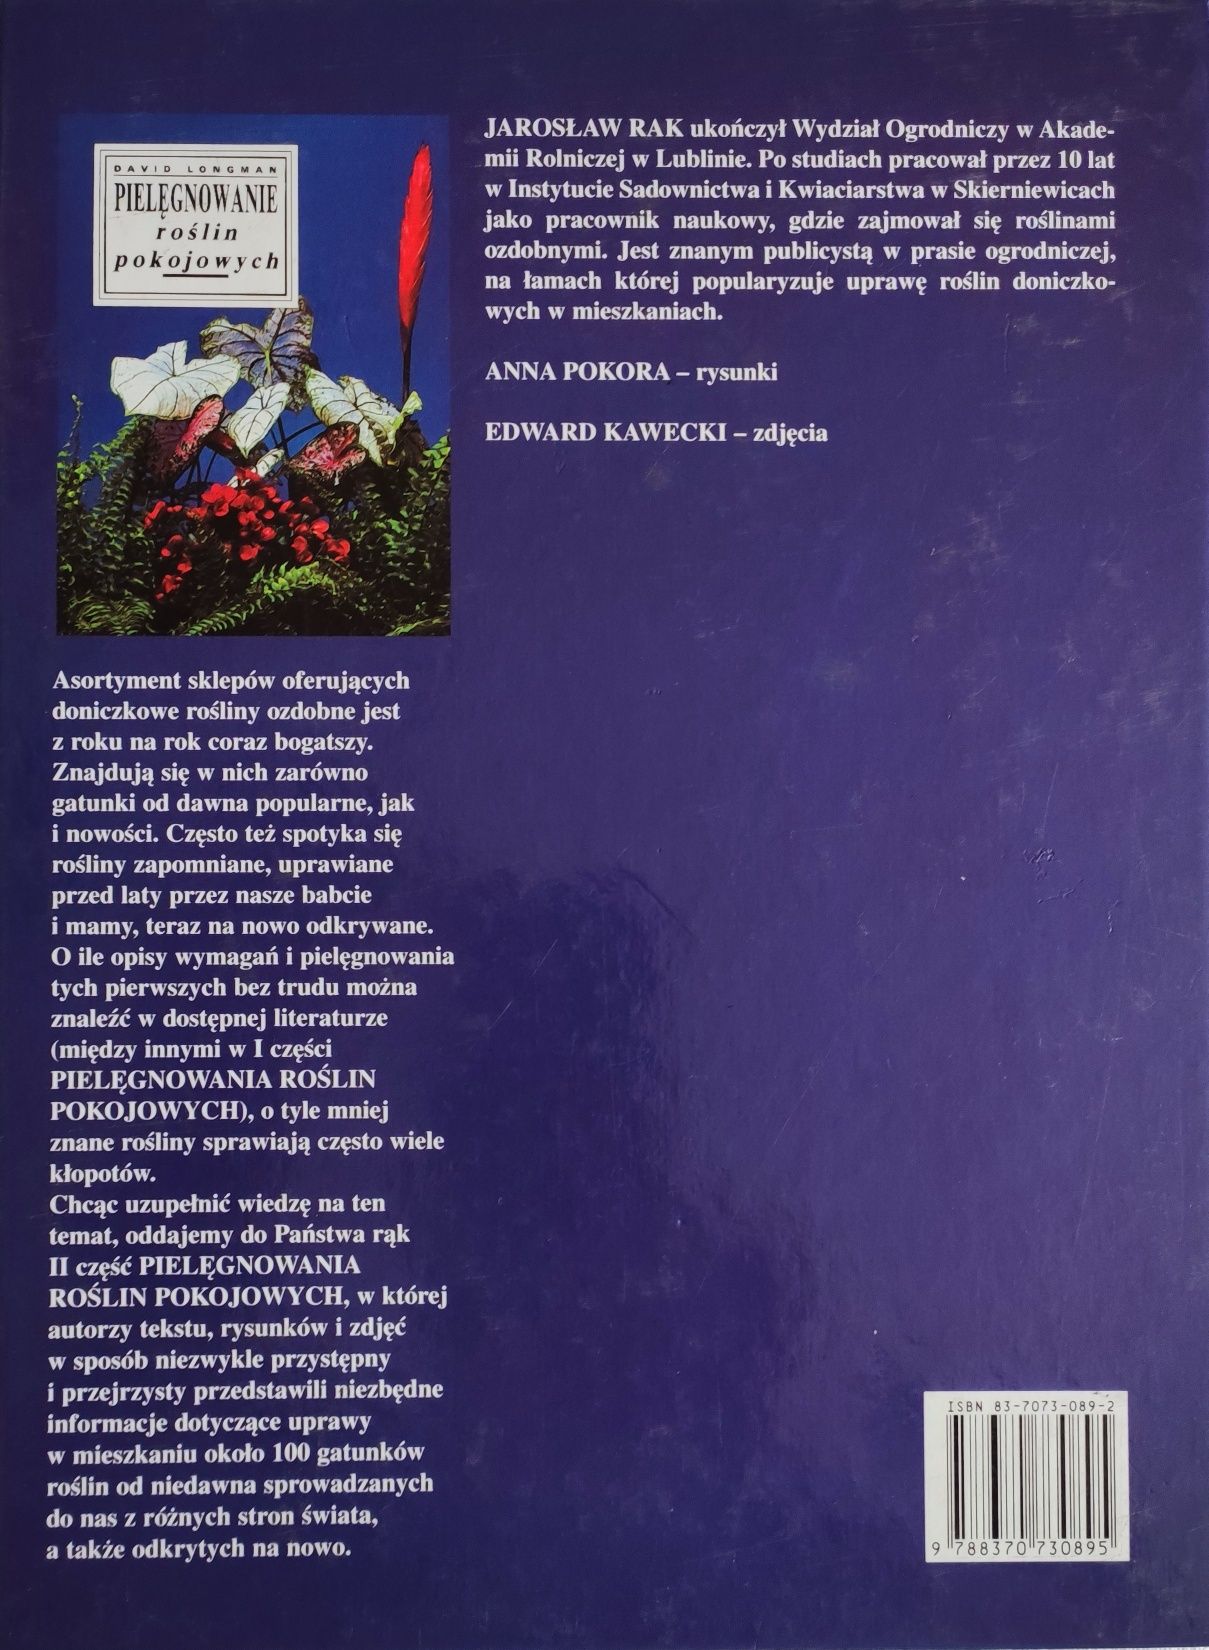 Książka "Pielęgnowanie roślin pokojowych" część 2, autor: Jarosław Rak